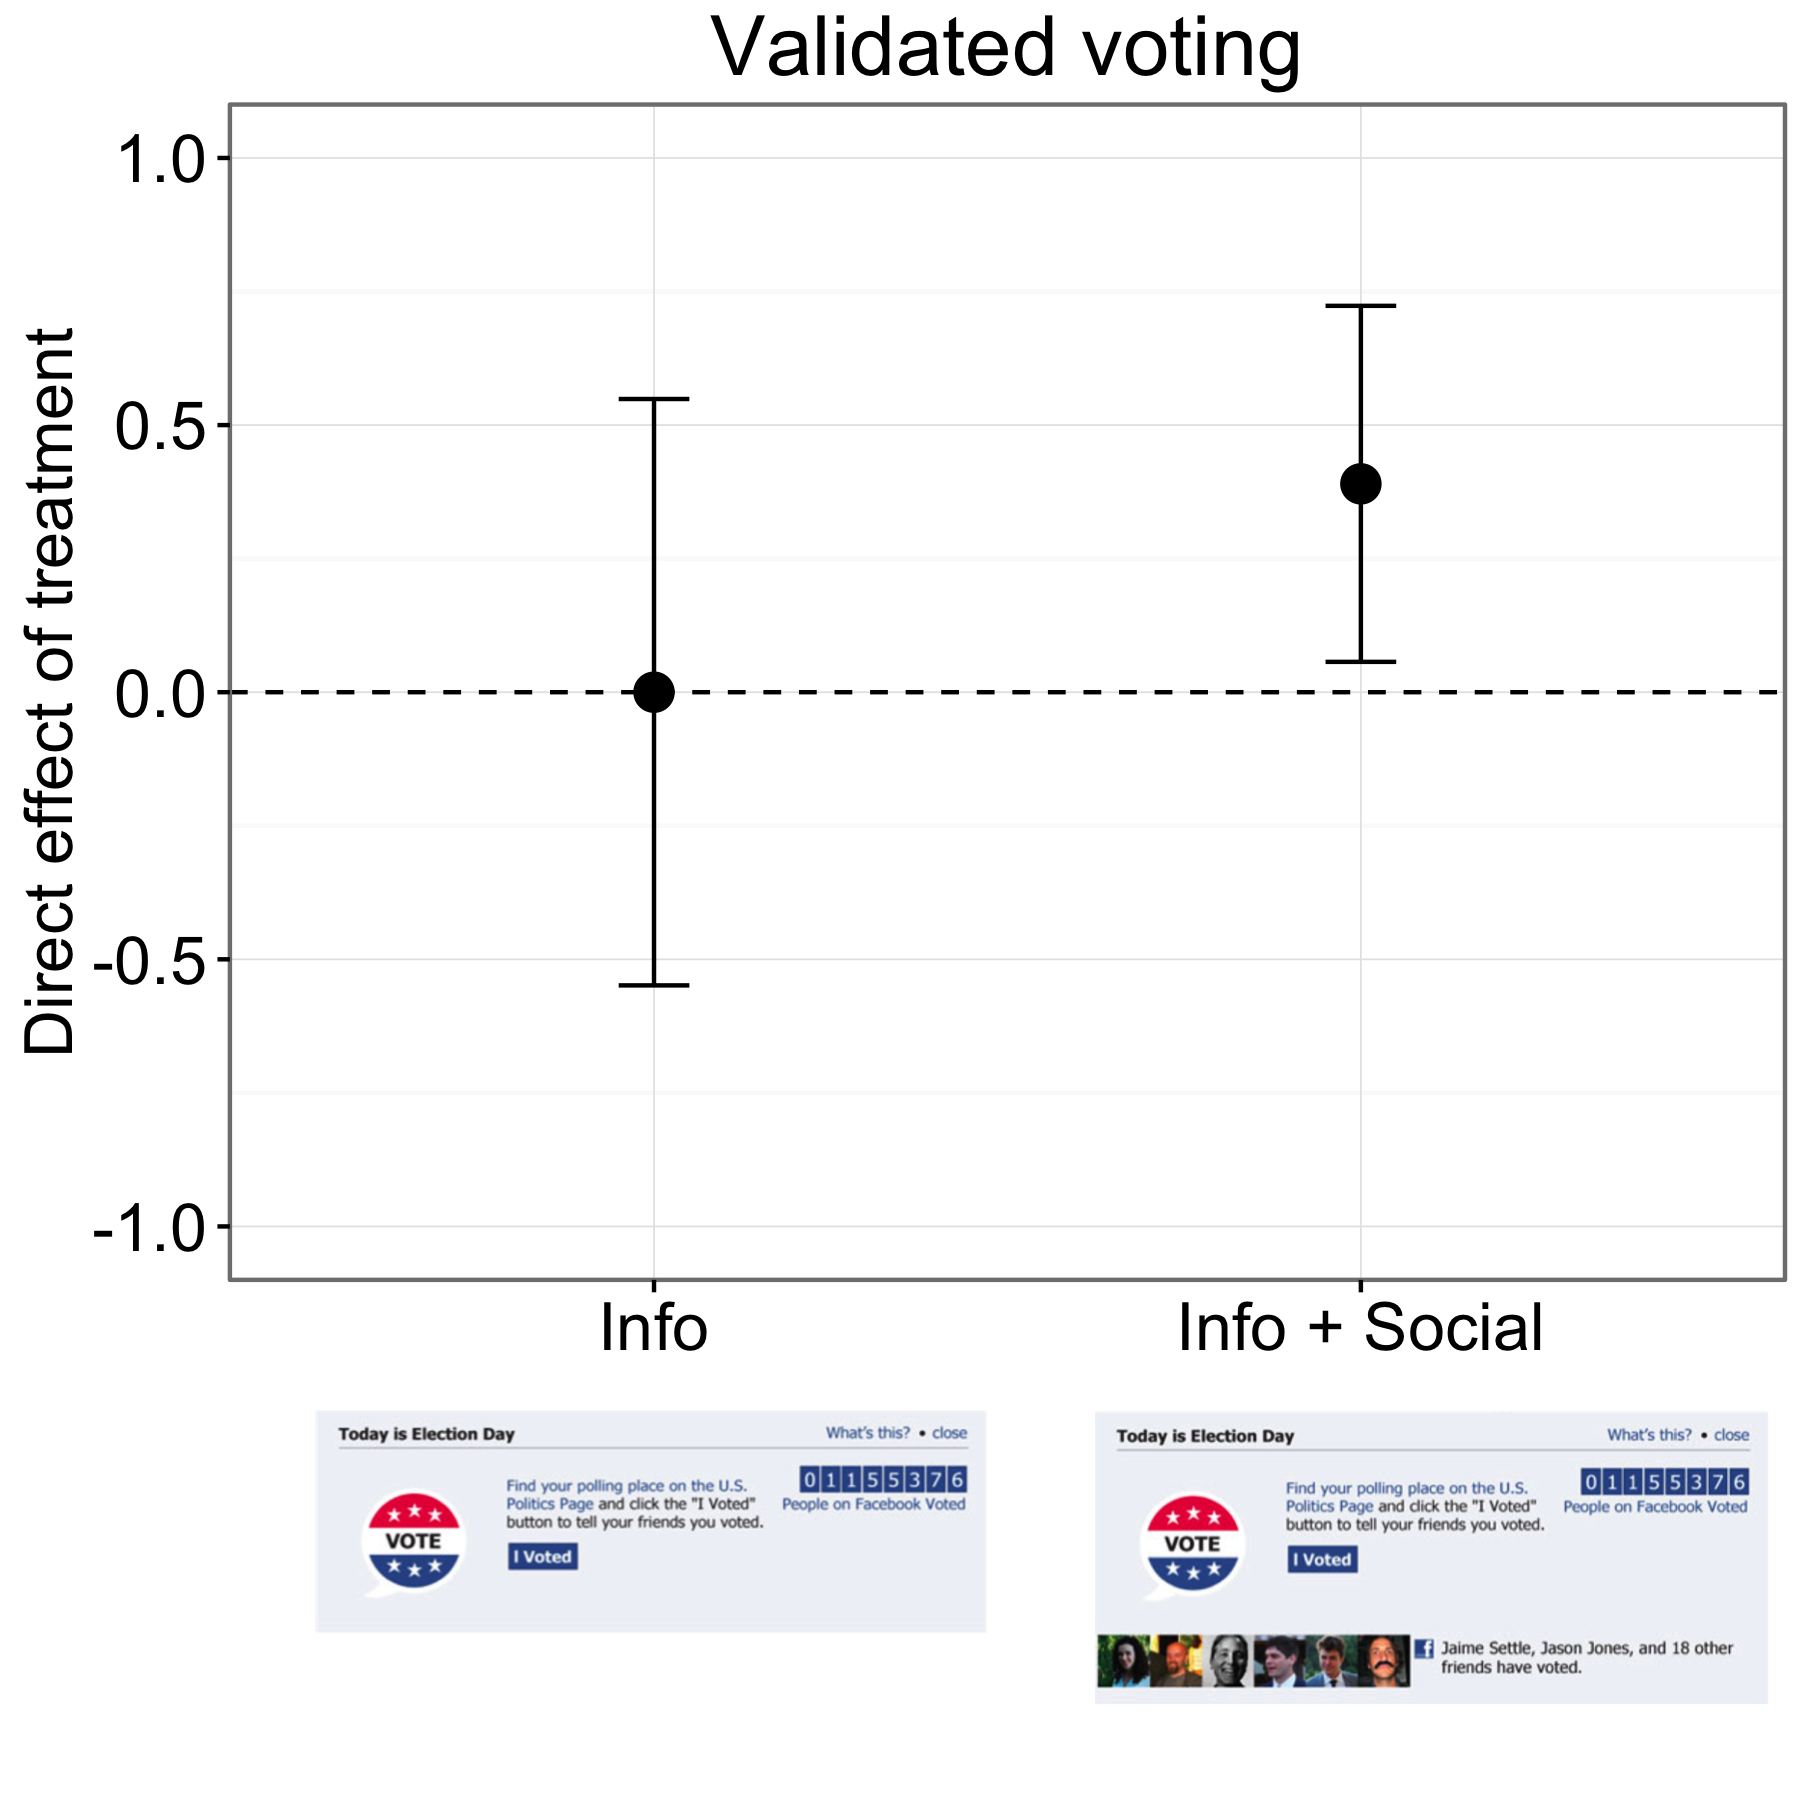 Фигура 4.18: Резултати от експеримент за излизане на глас във Facebook (Bond et al., 2012 г.). Участниците в информационната група гласуваха със същия процент като тези в контролната група, но хората в Info + Social групата гласуваха с малко по-висок процент. Баровете представляват предполагаеми интервали на доверителност 95%. Резултатите в графиката са за приблизително шест милиона участници, които бяха съпоставени с резултатите от гласуването. Адаптирано от Bond et al. (2012 г.), фигура 1.